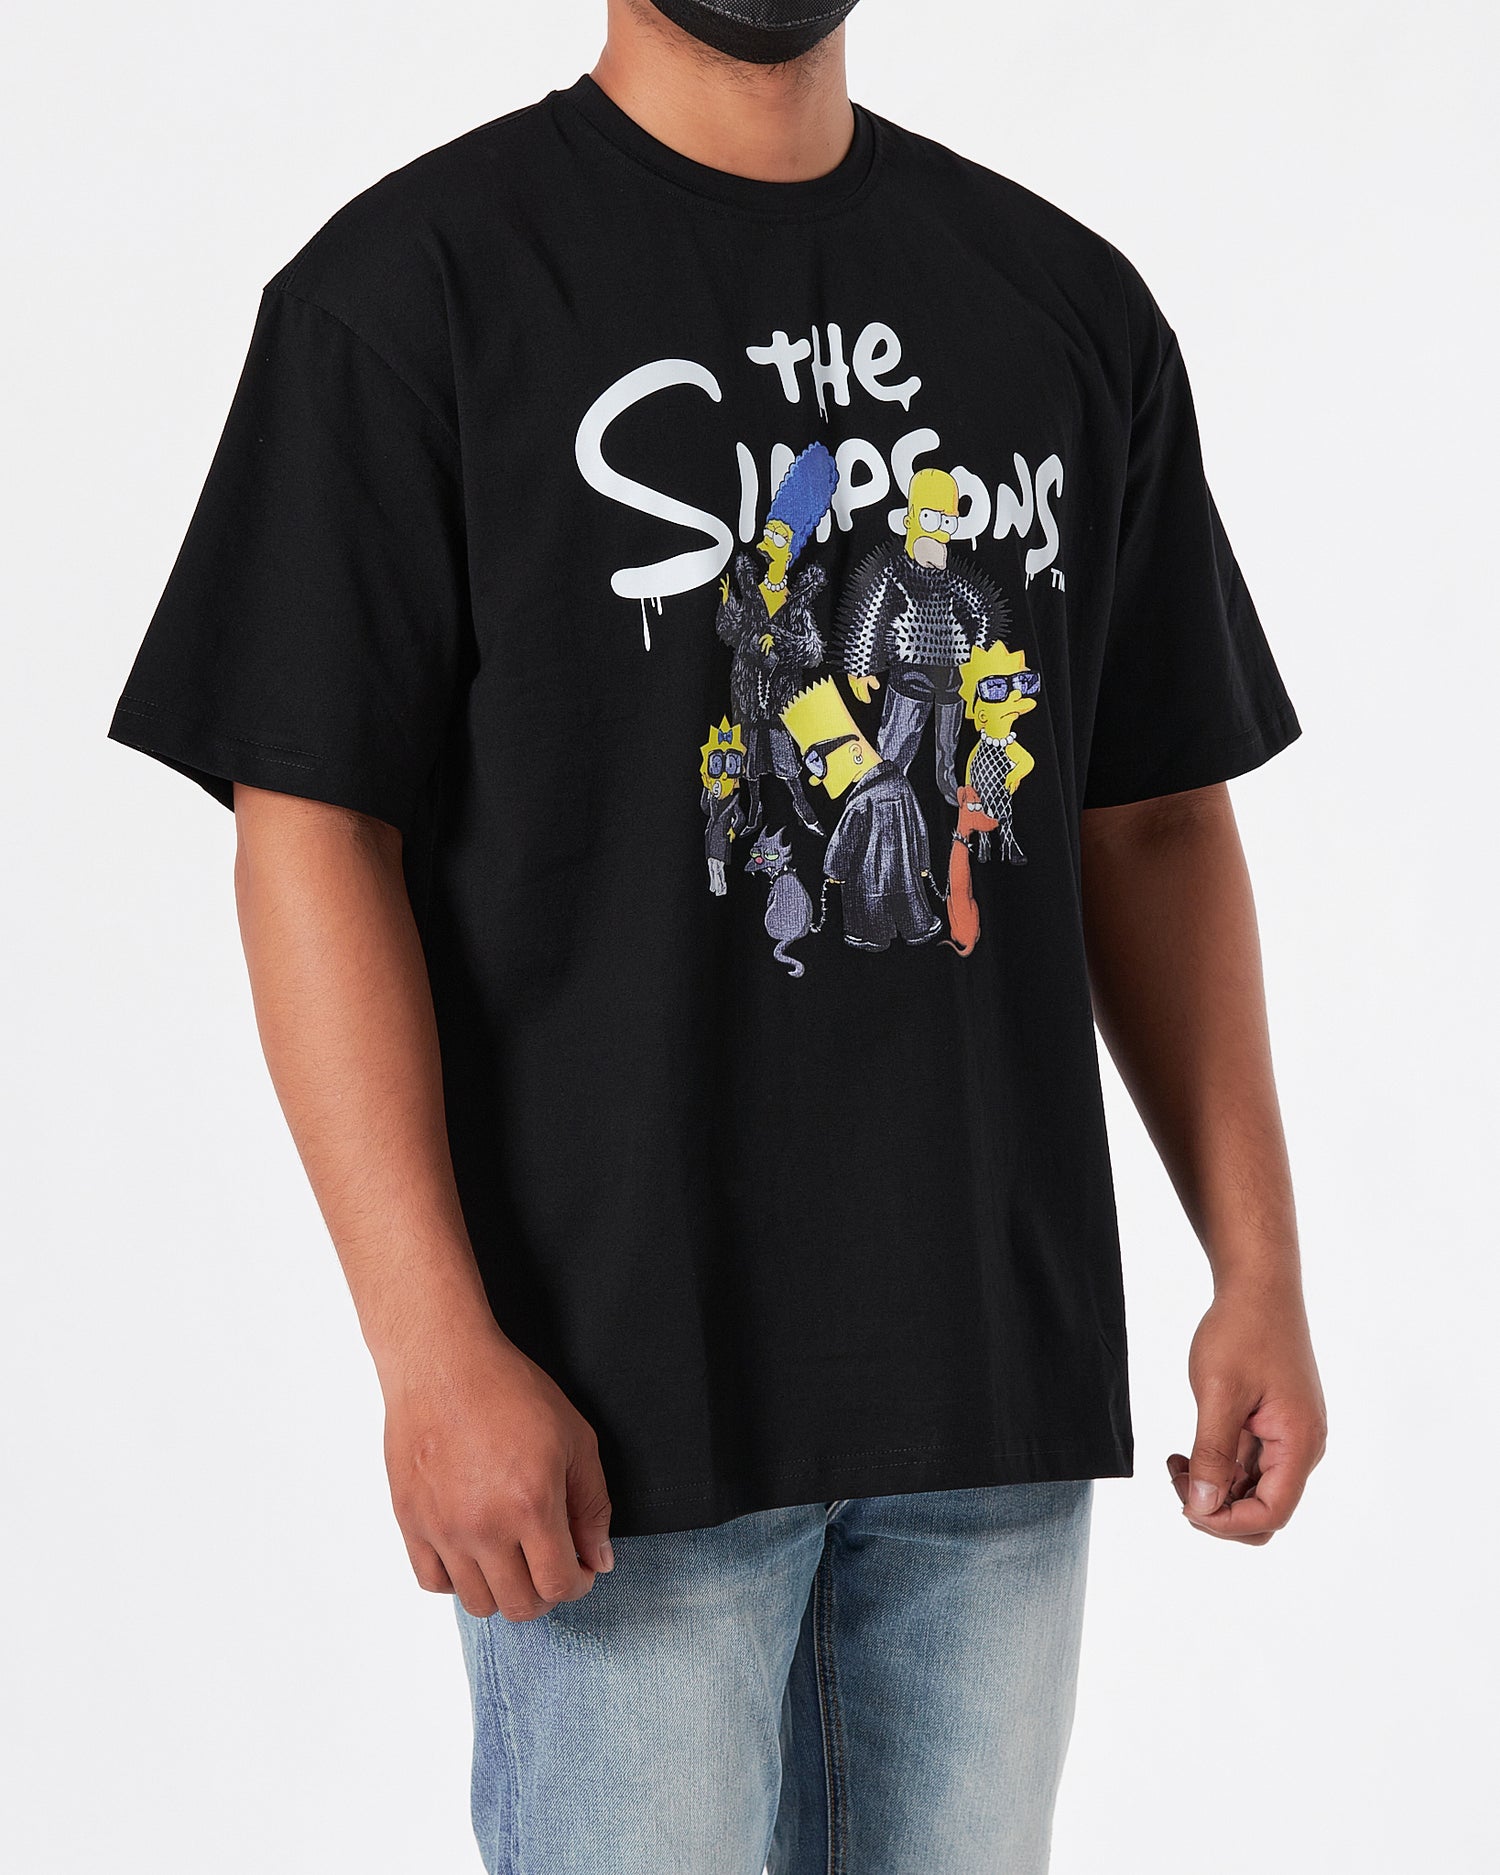 BAL The Simpsons Printed Men Black T-Shirt 17.90